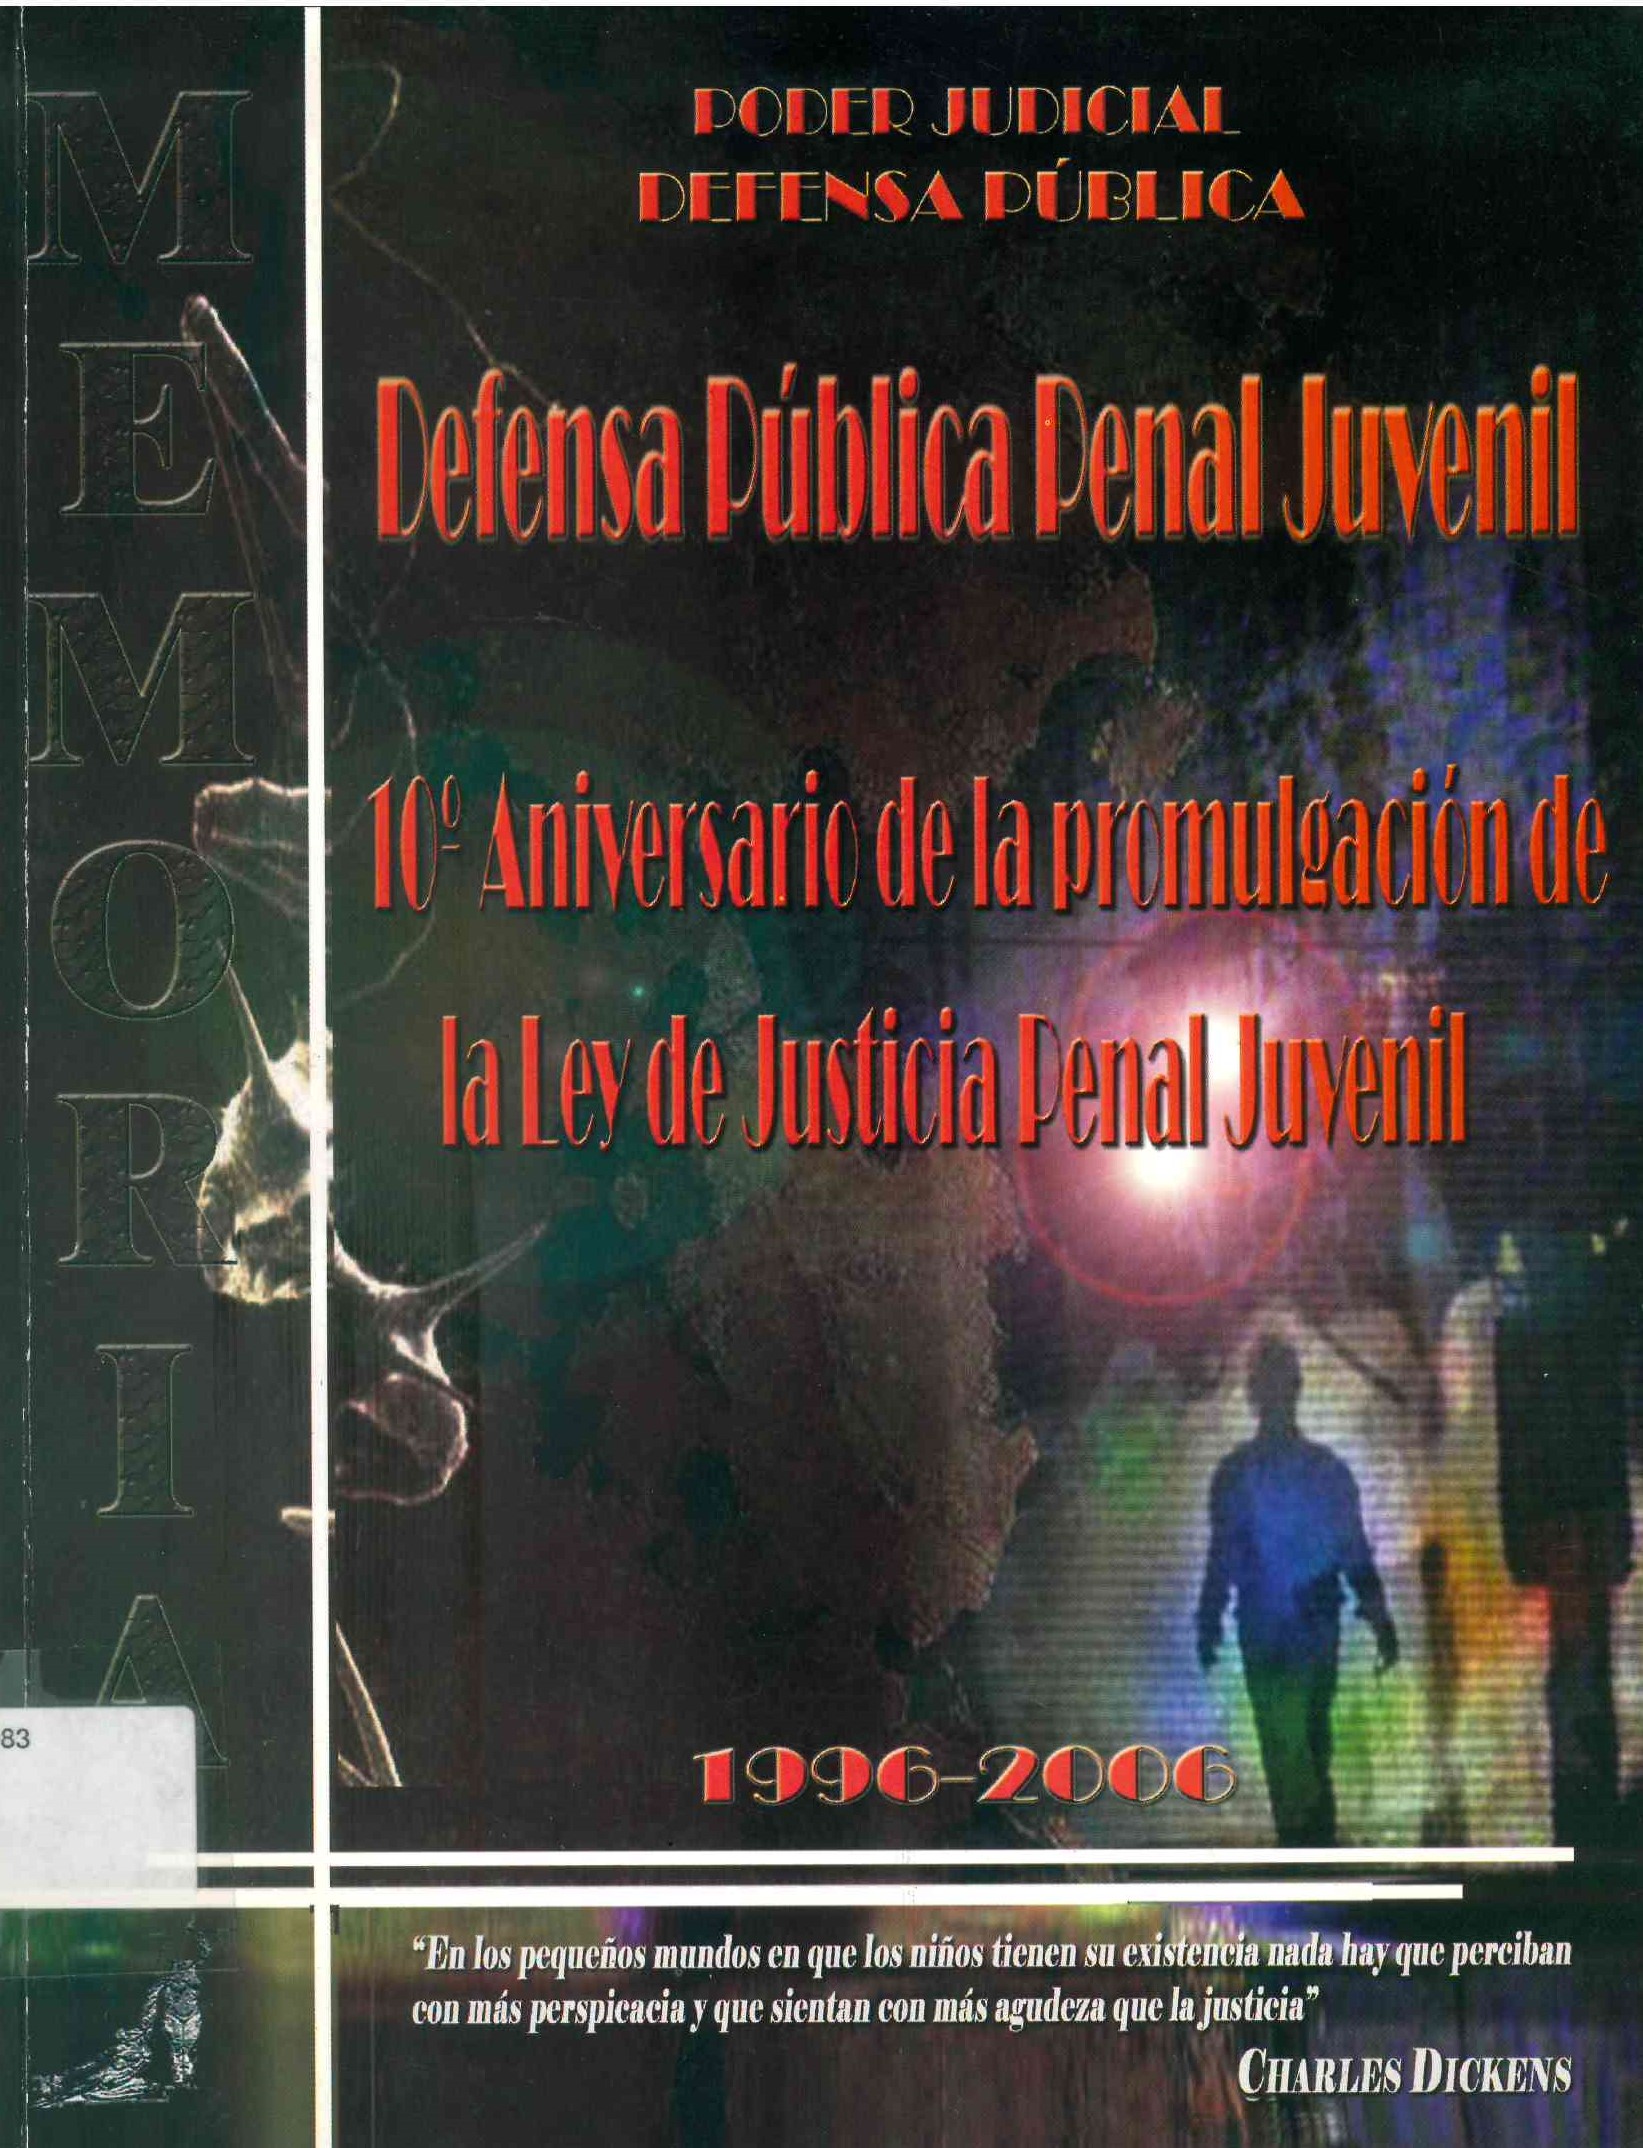 Defensa pública penal juvenil. 10° aniversario de la promulgación de la ley de justicia penal juvenil 1996-2006